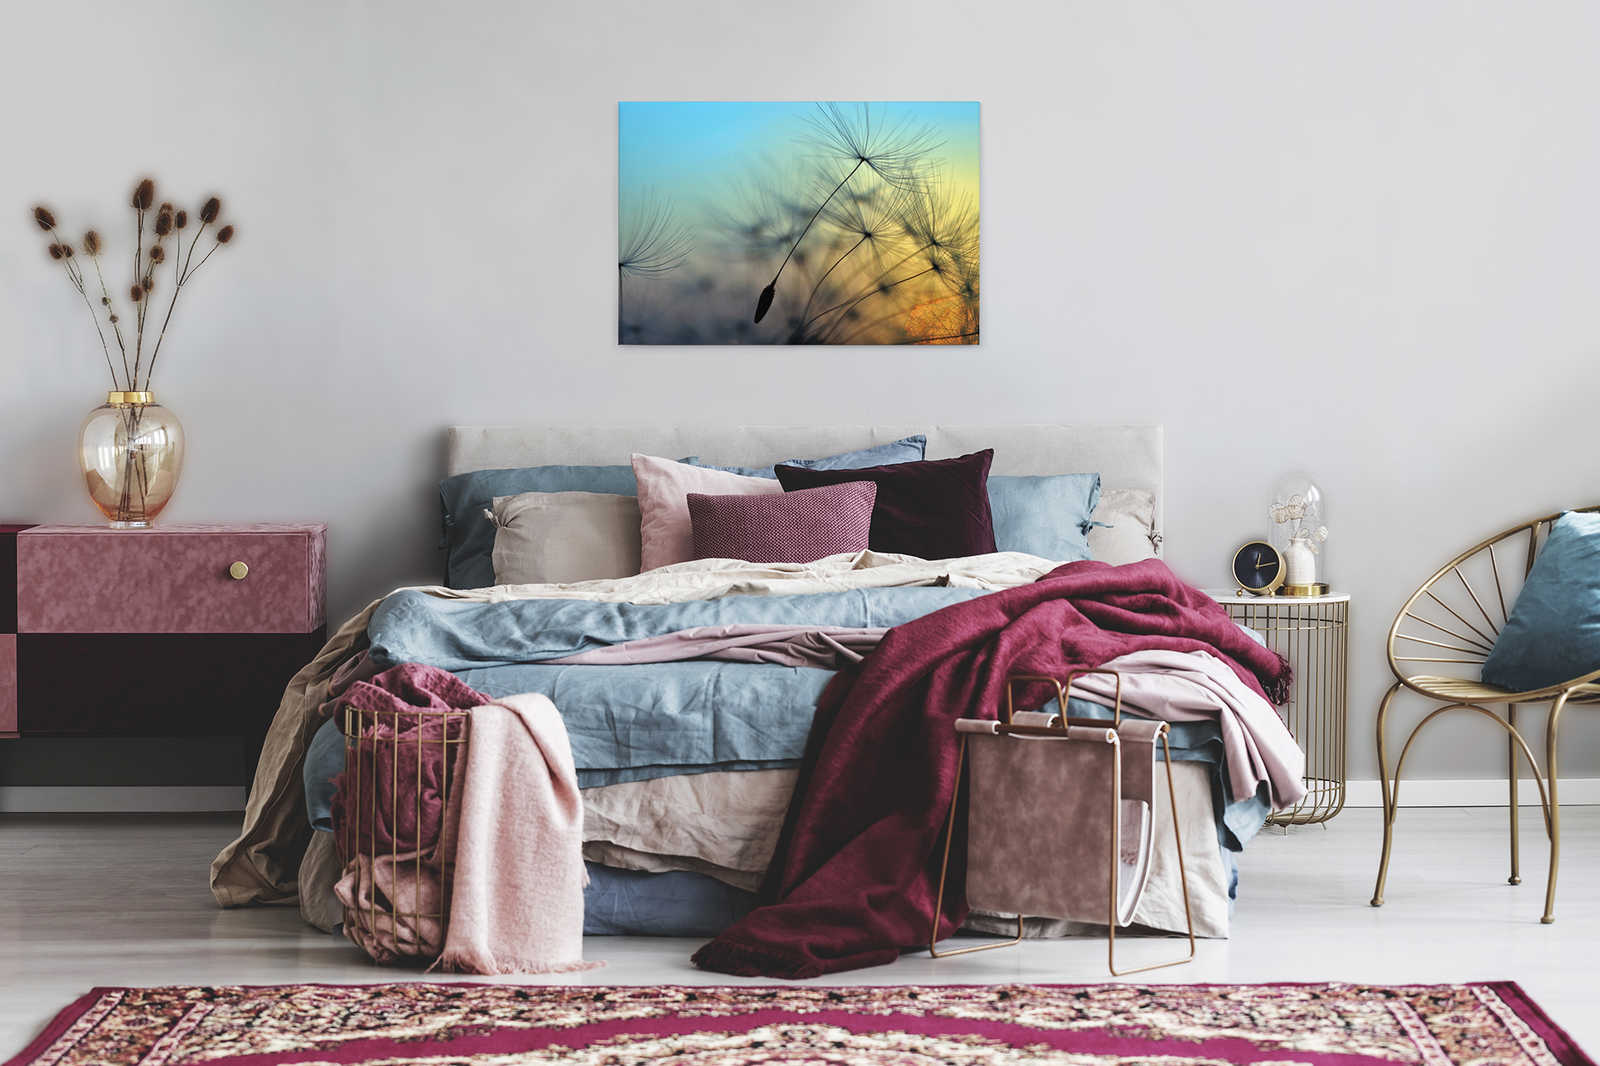             Canvas Dandelion & Sunset - 0.90 m x 0.60 m
        